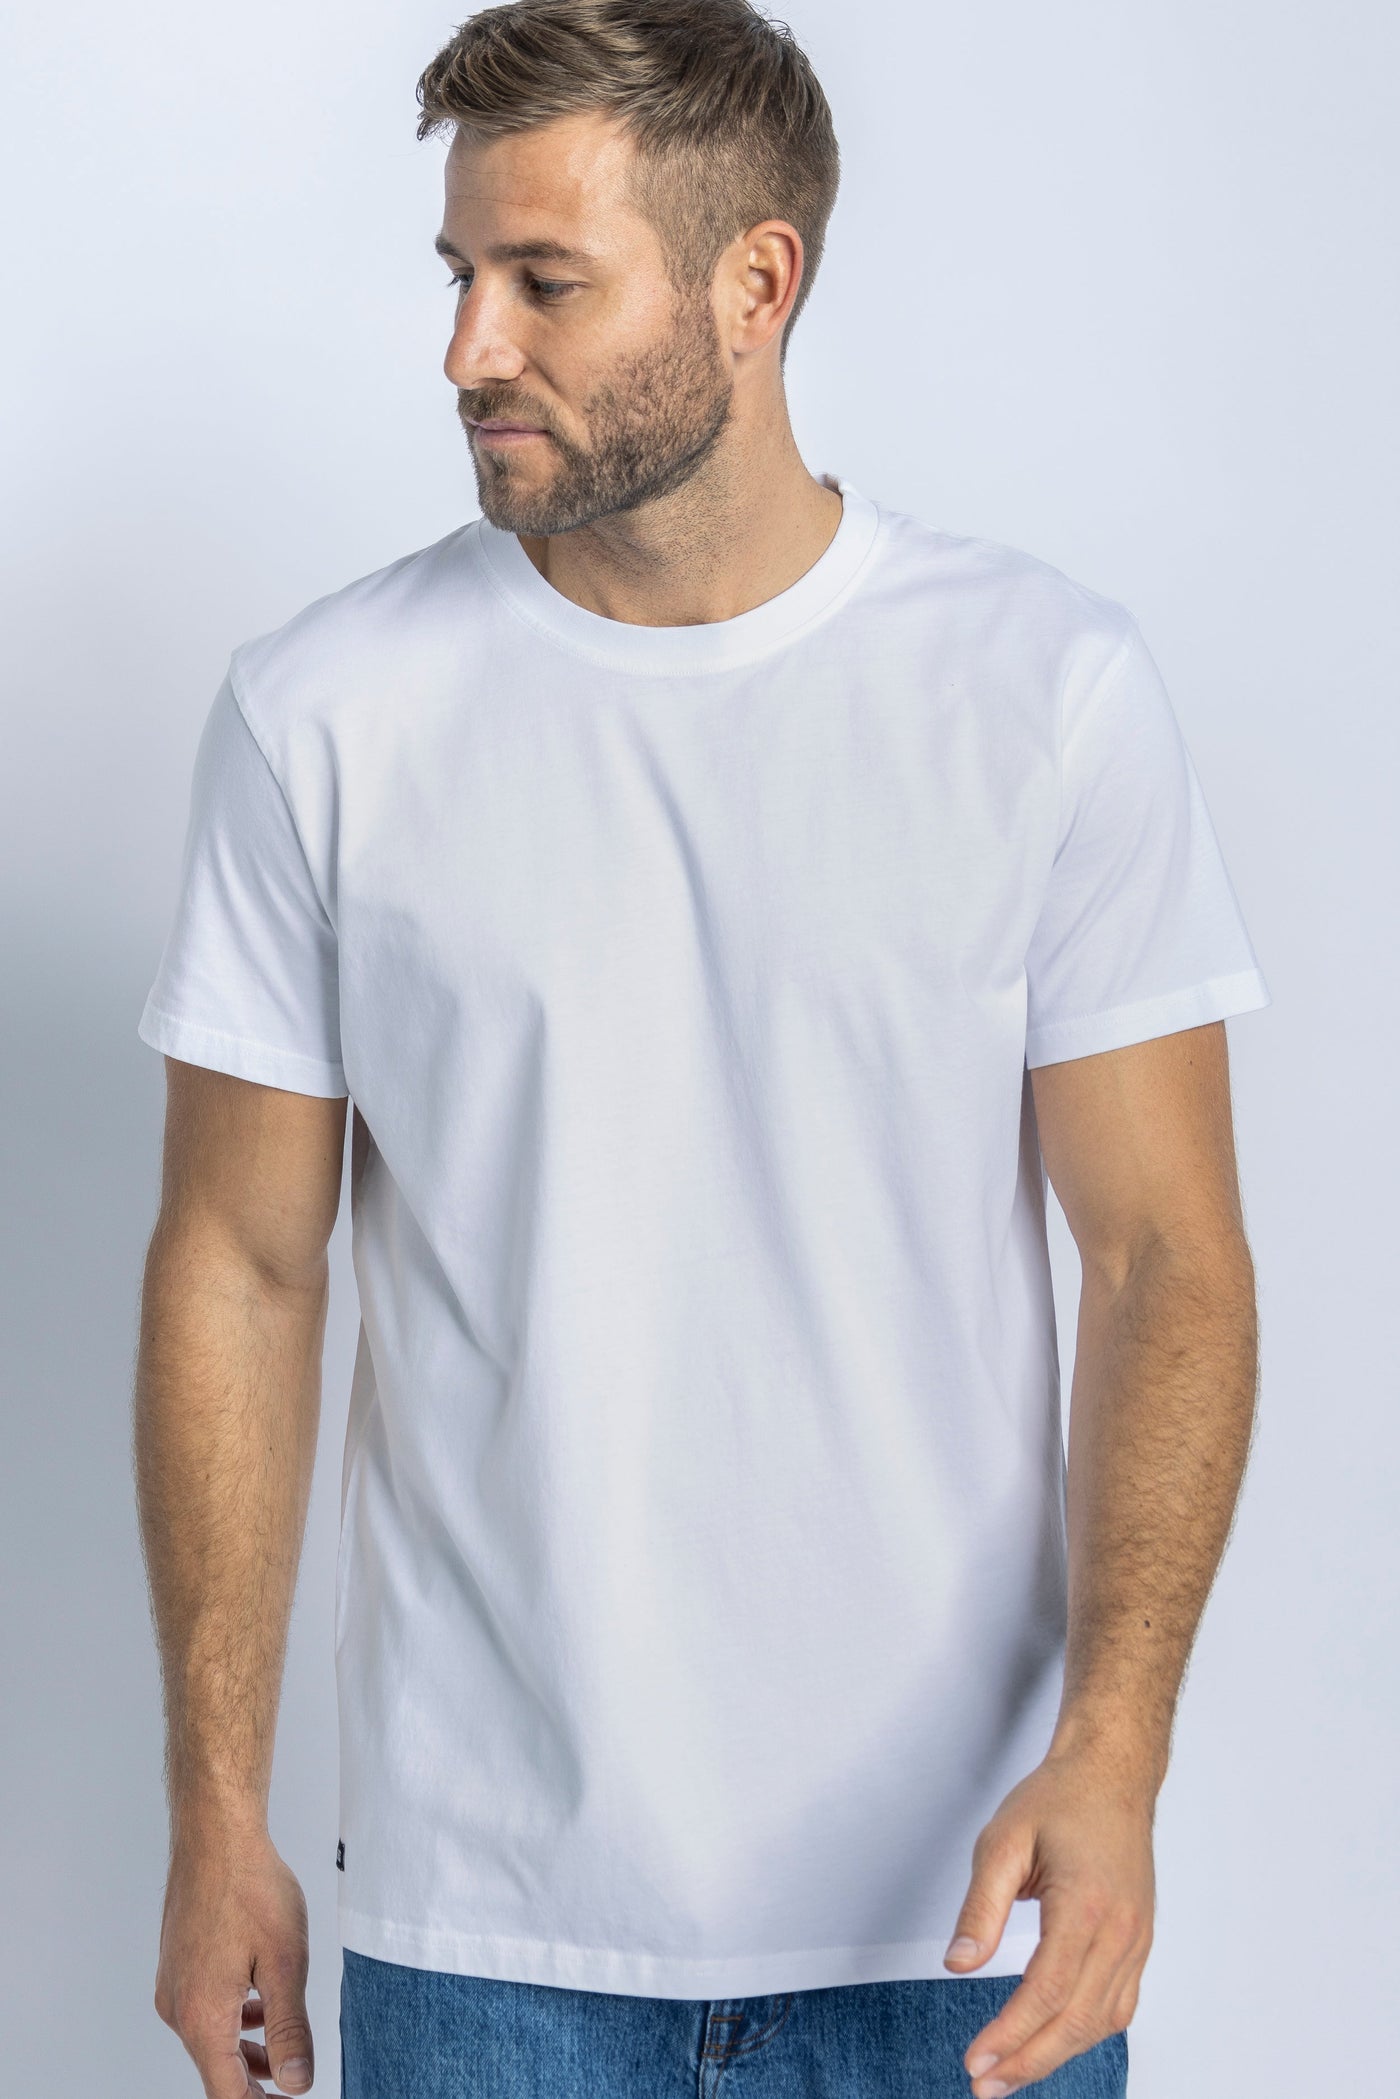 3er-Pack Premium Blank GOTS T-Shirt STANDARD, Weiß